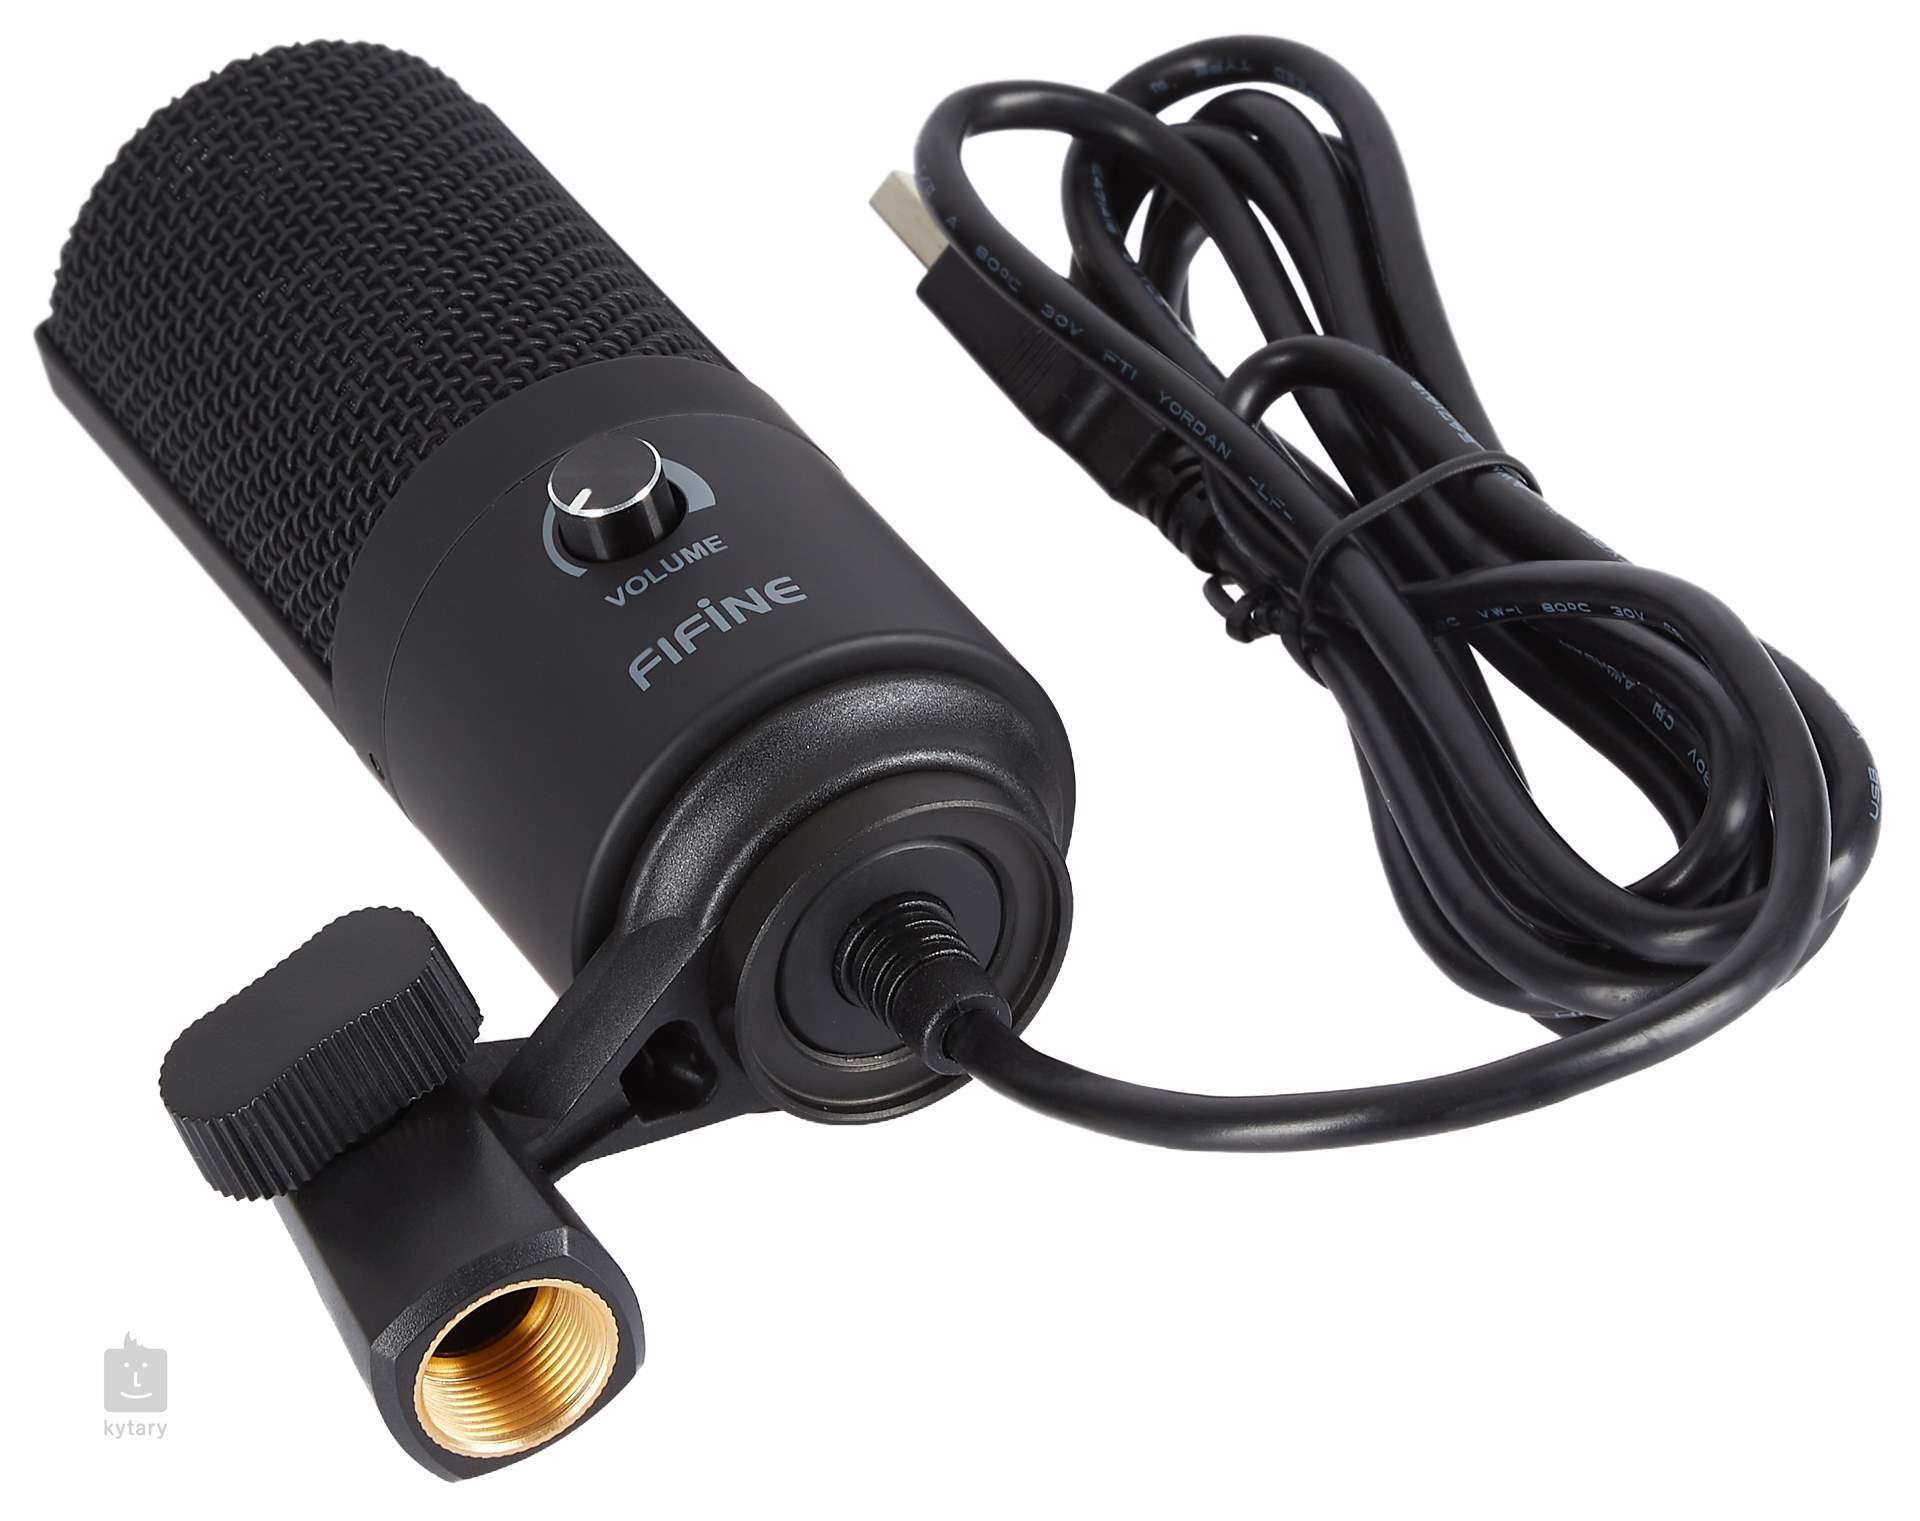 FIFINE USB Microphone d'enregistrement de Studio, Micro à